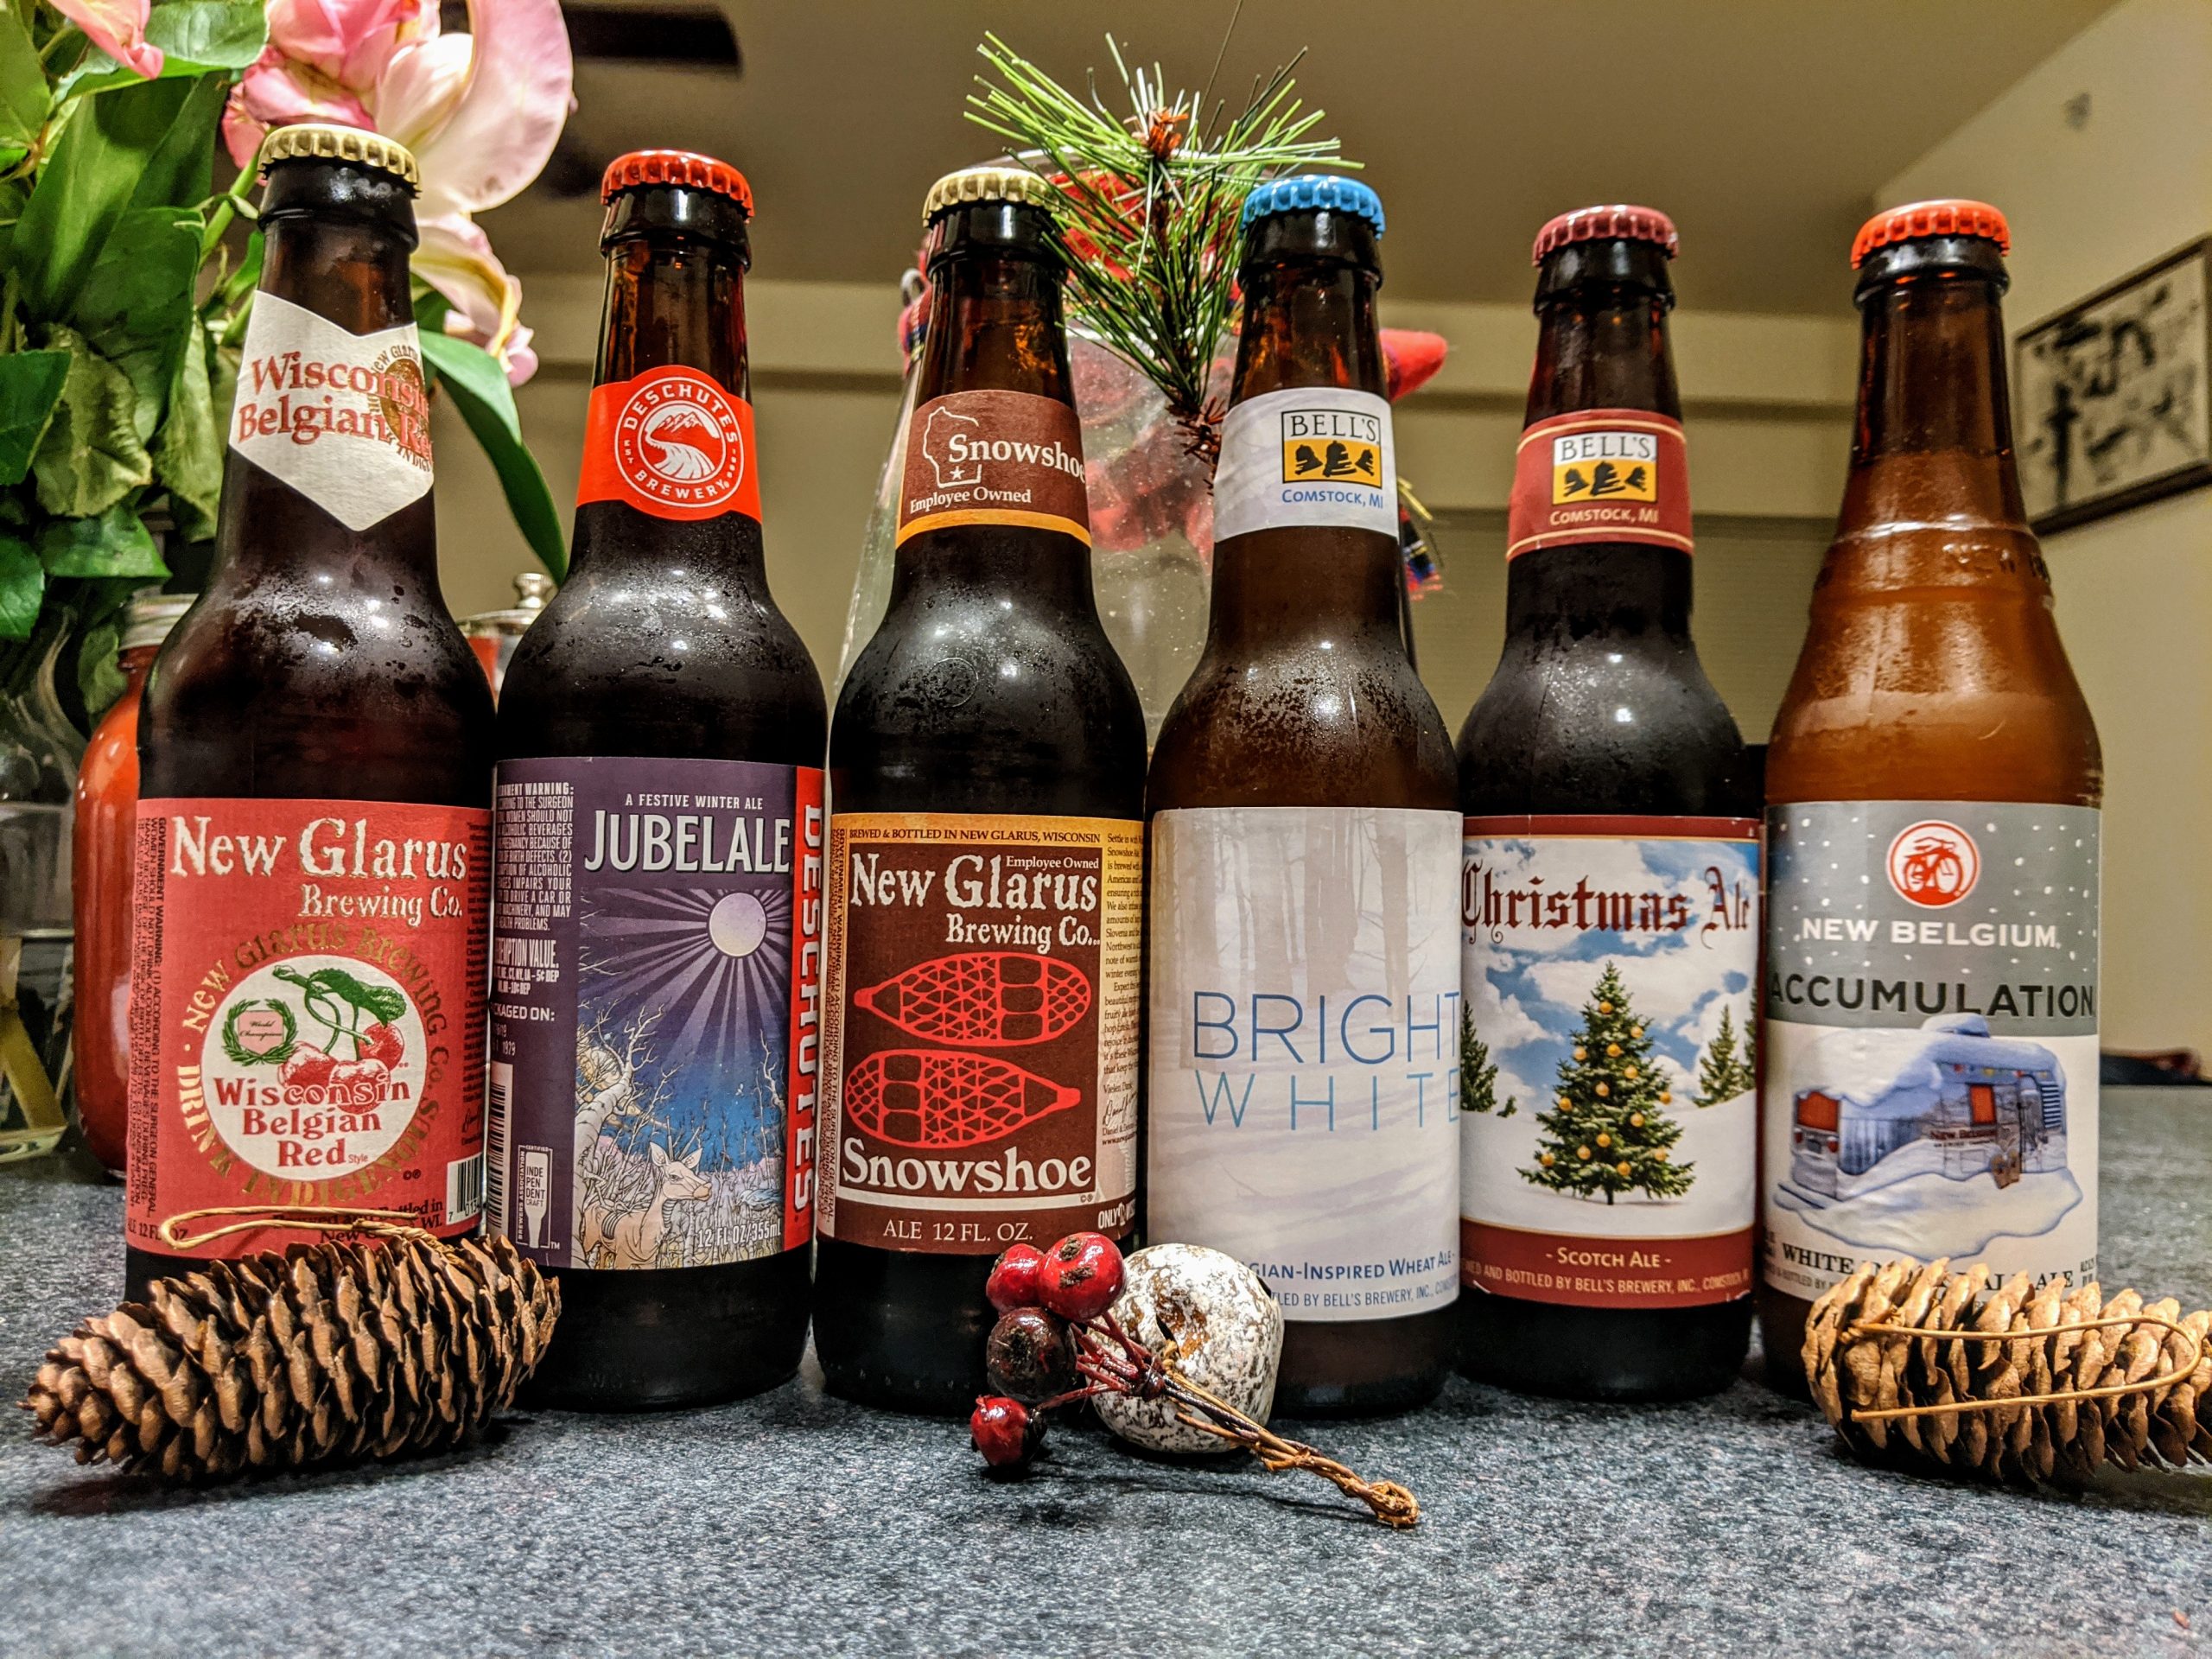 Christmas beers